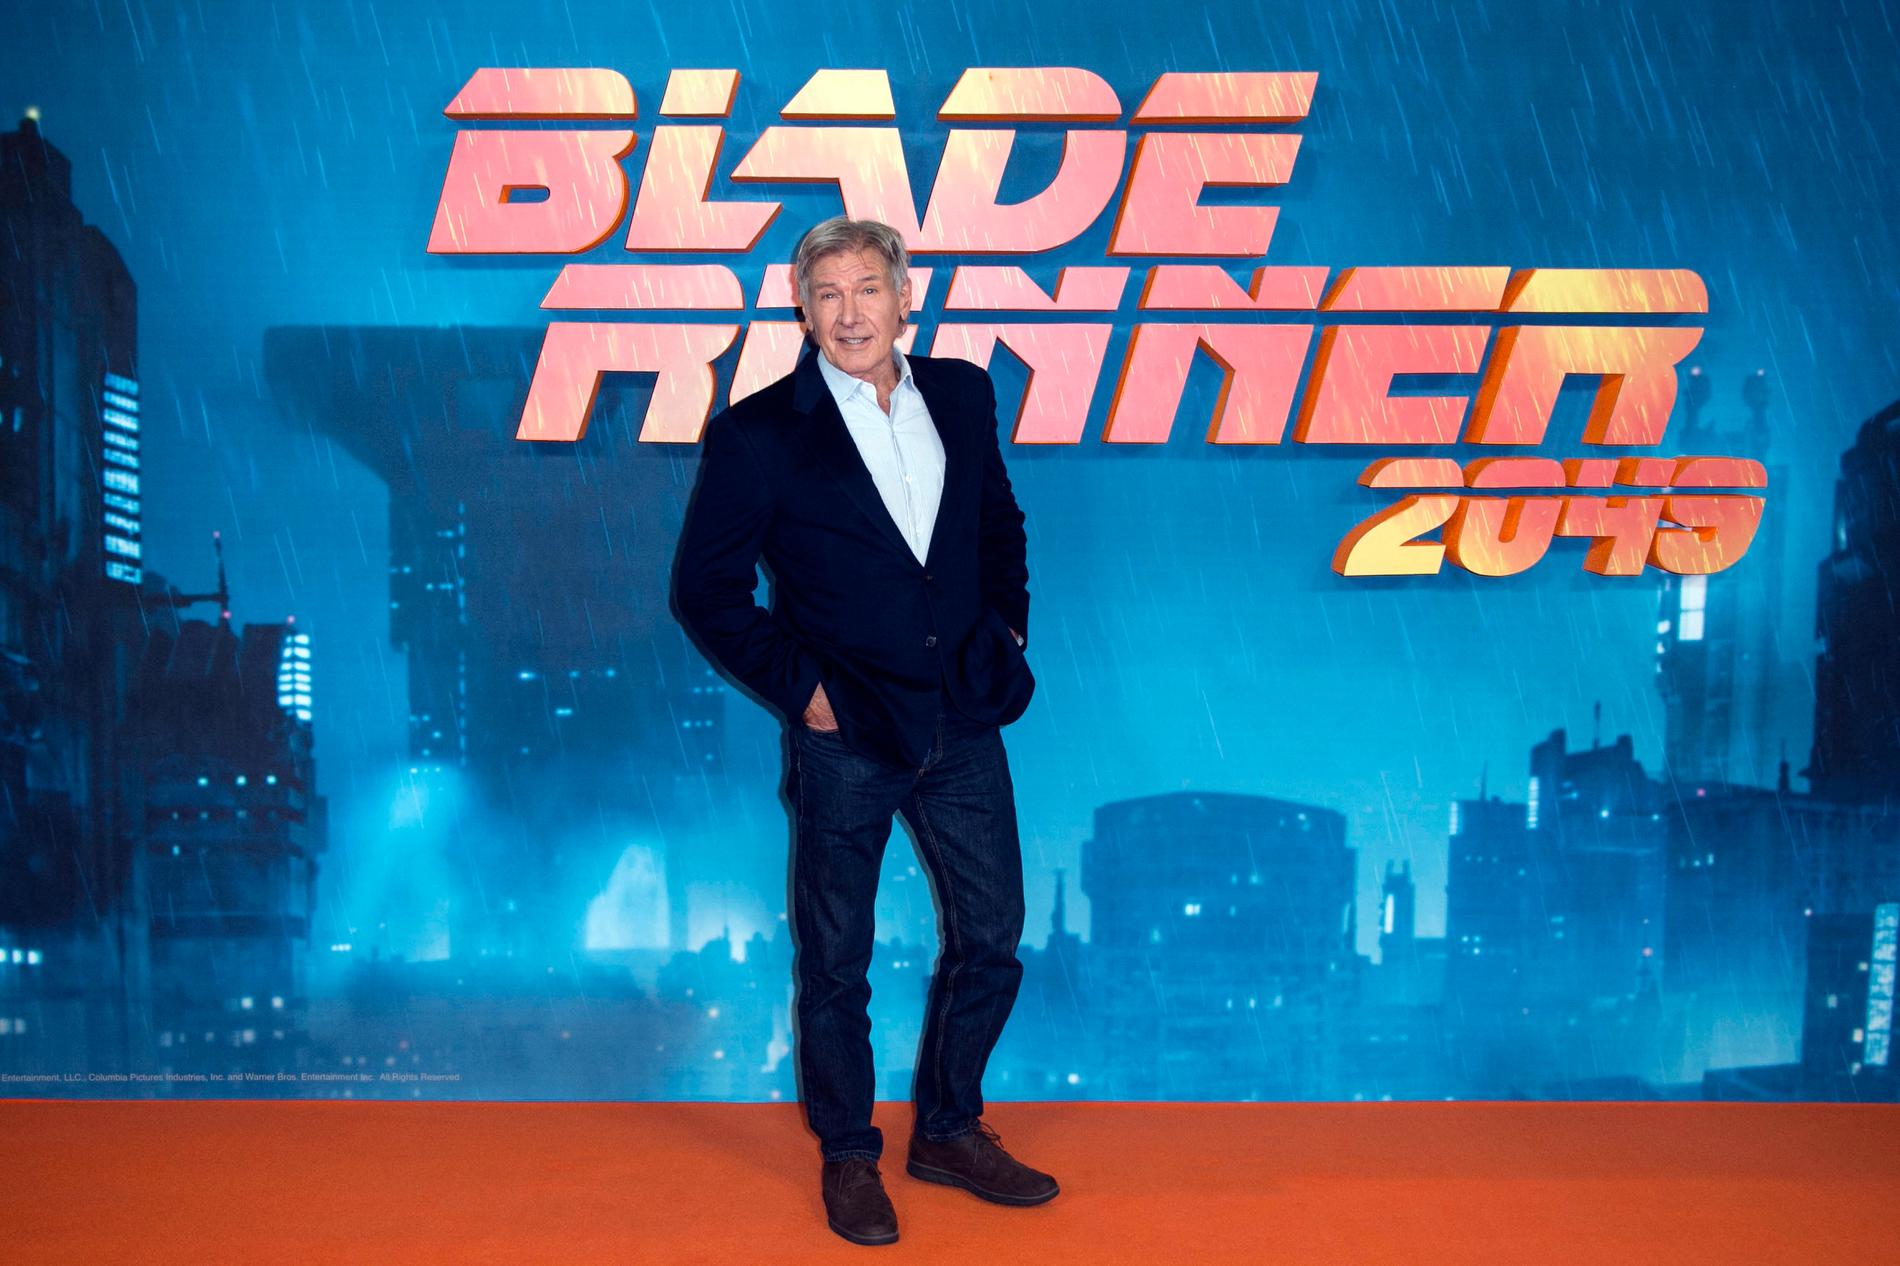 Harrison Ford repriserade sin roll som Rick Deckard i "Blade Runner 2049" som kom 2017.